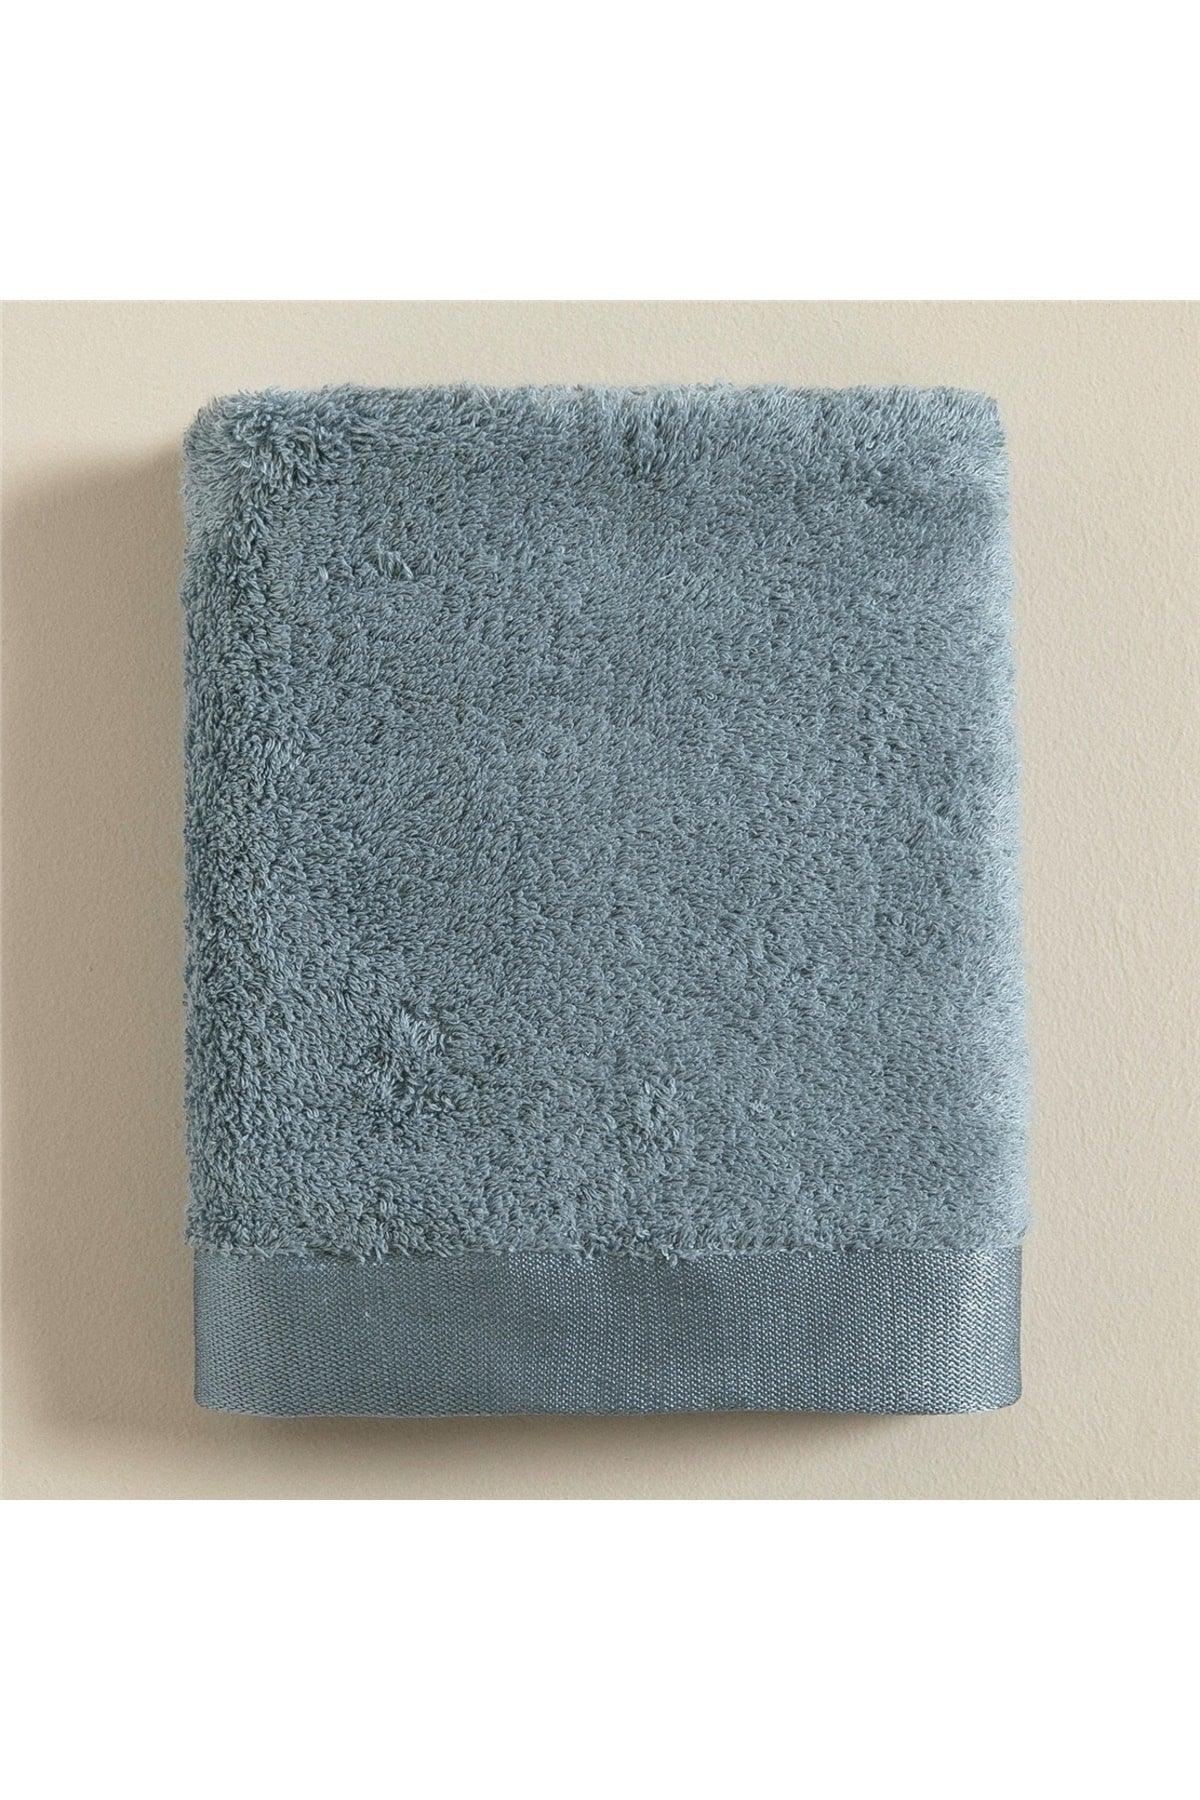 Floss Face Towel 50x90 cm Aqua - Swordslife